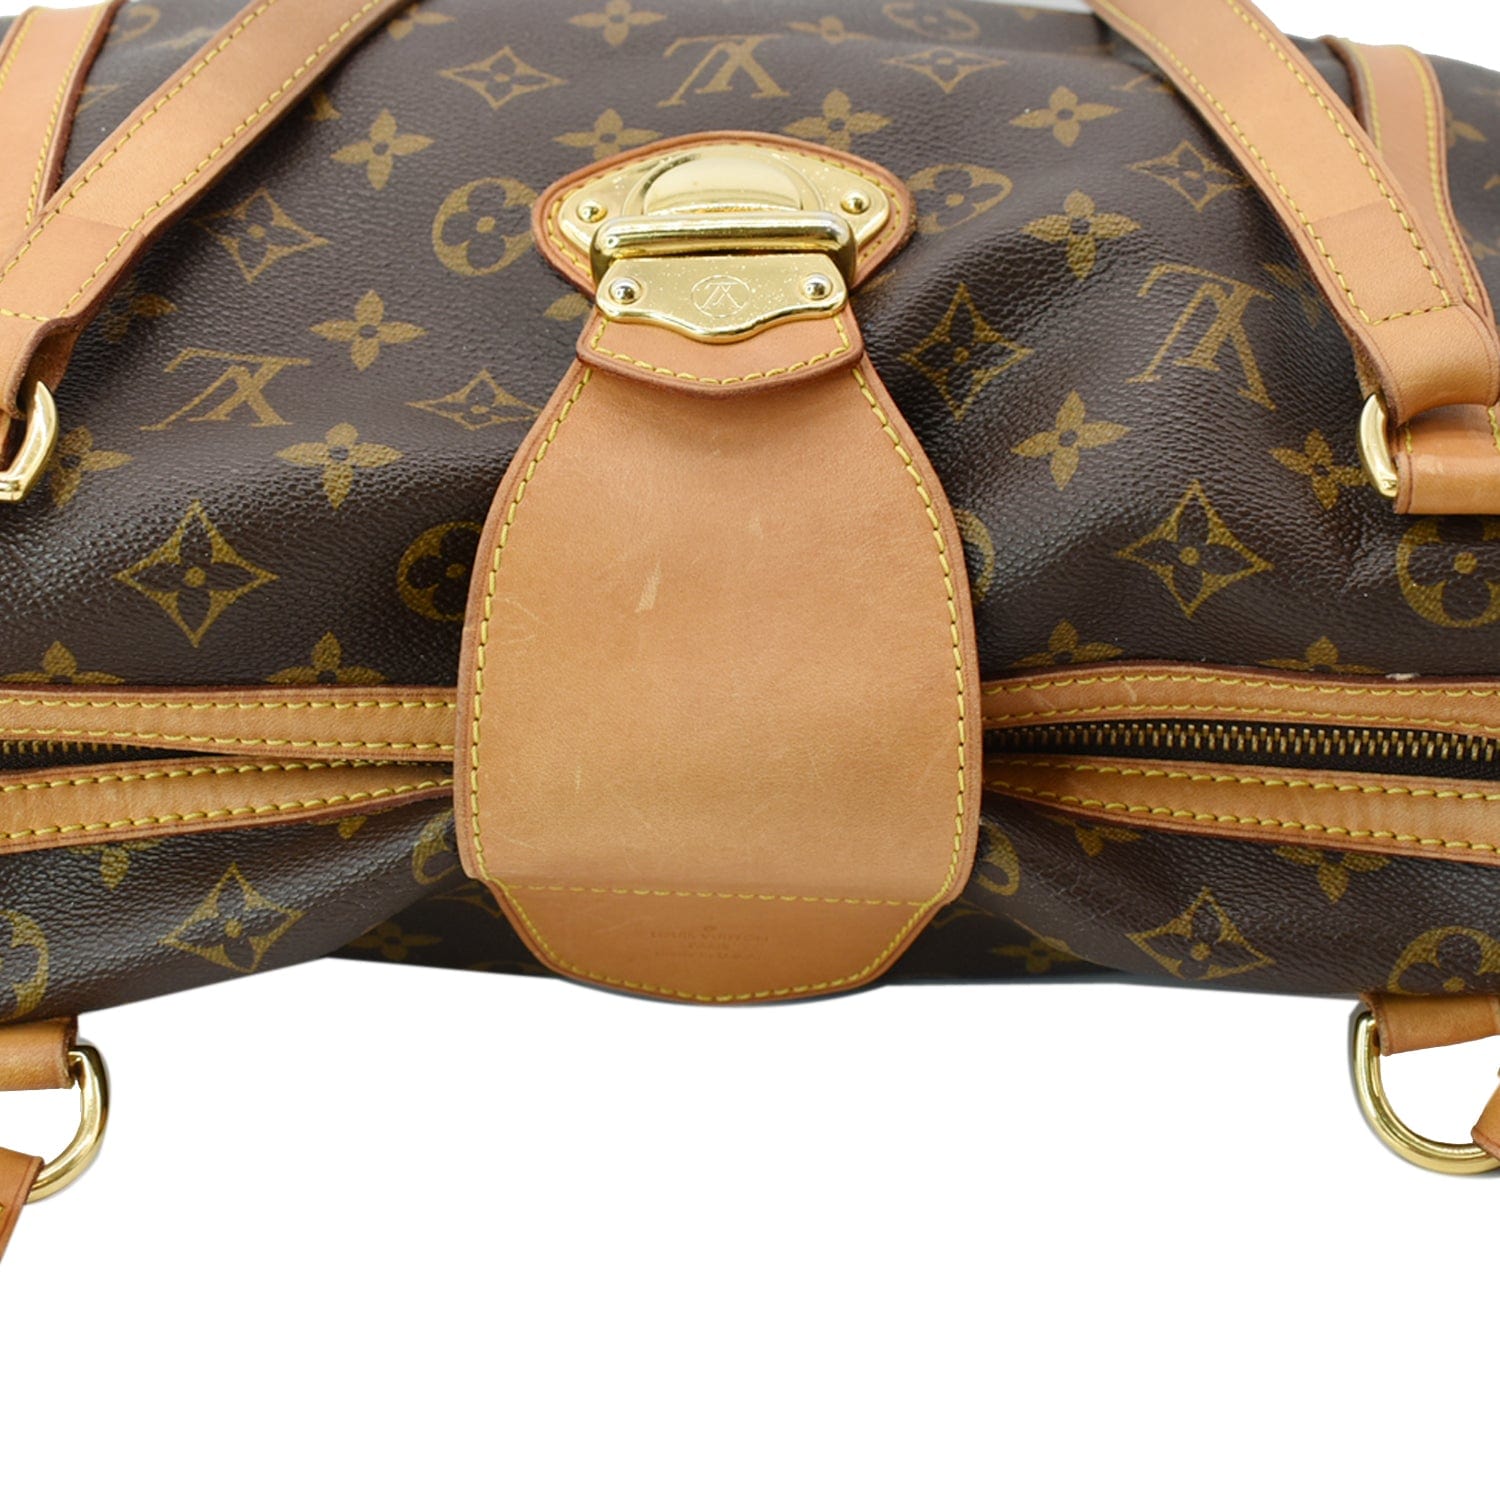 Stresa cloth handbag Louis Vuitton Brown in Cloth - 26457273